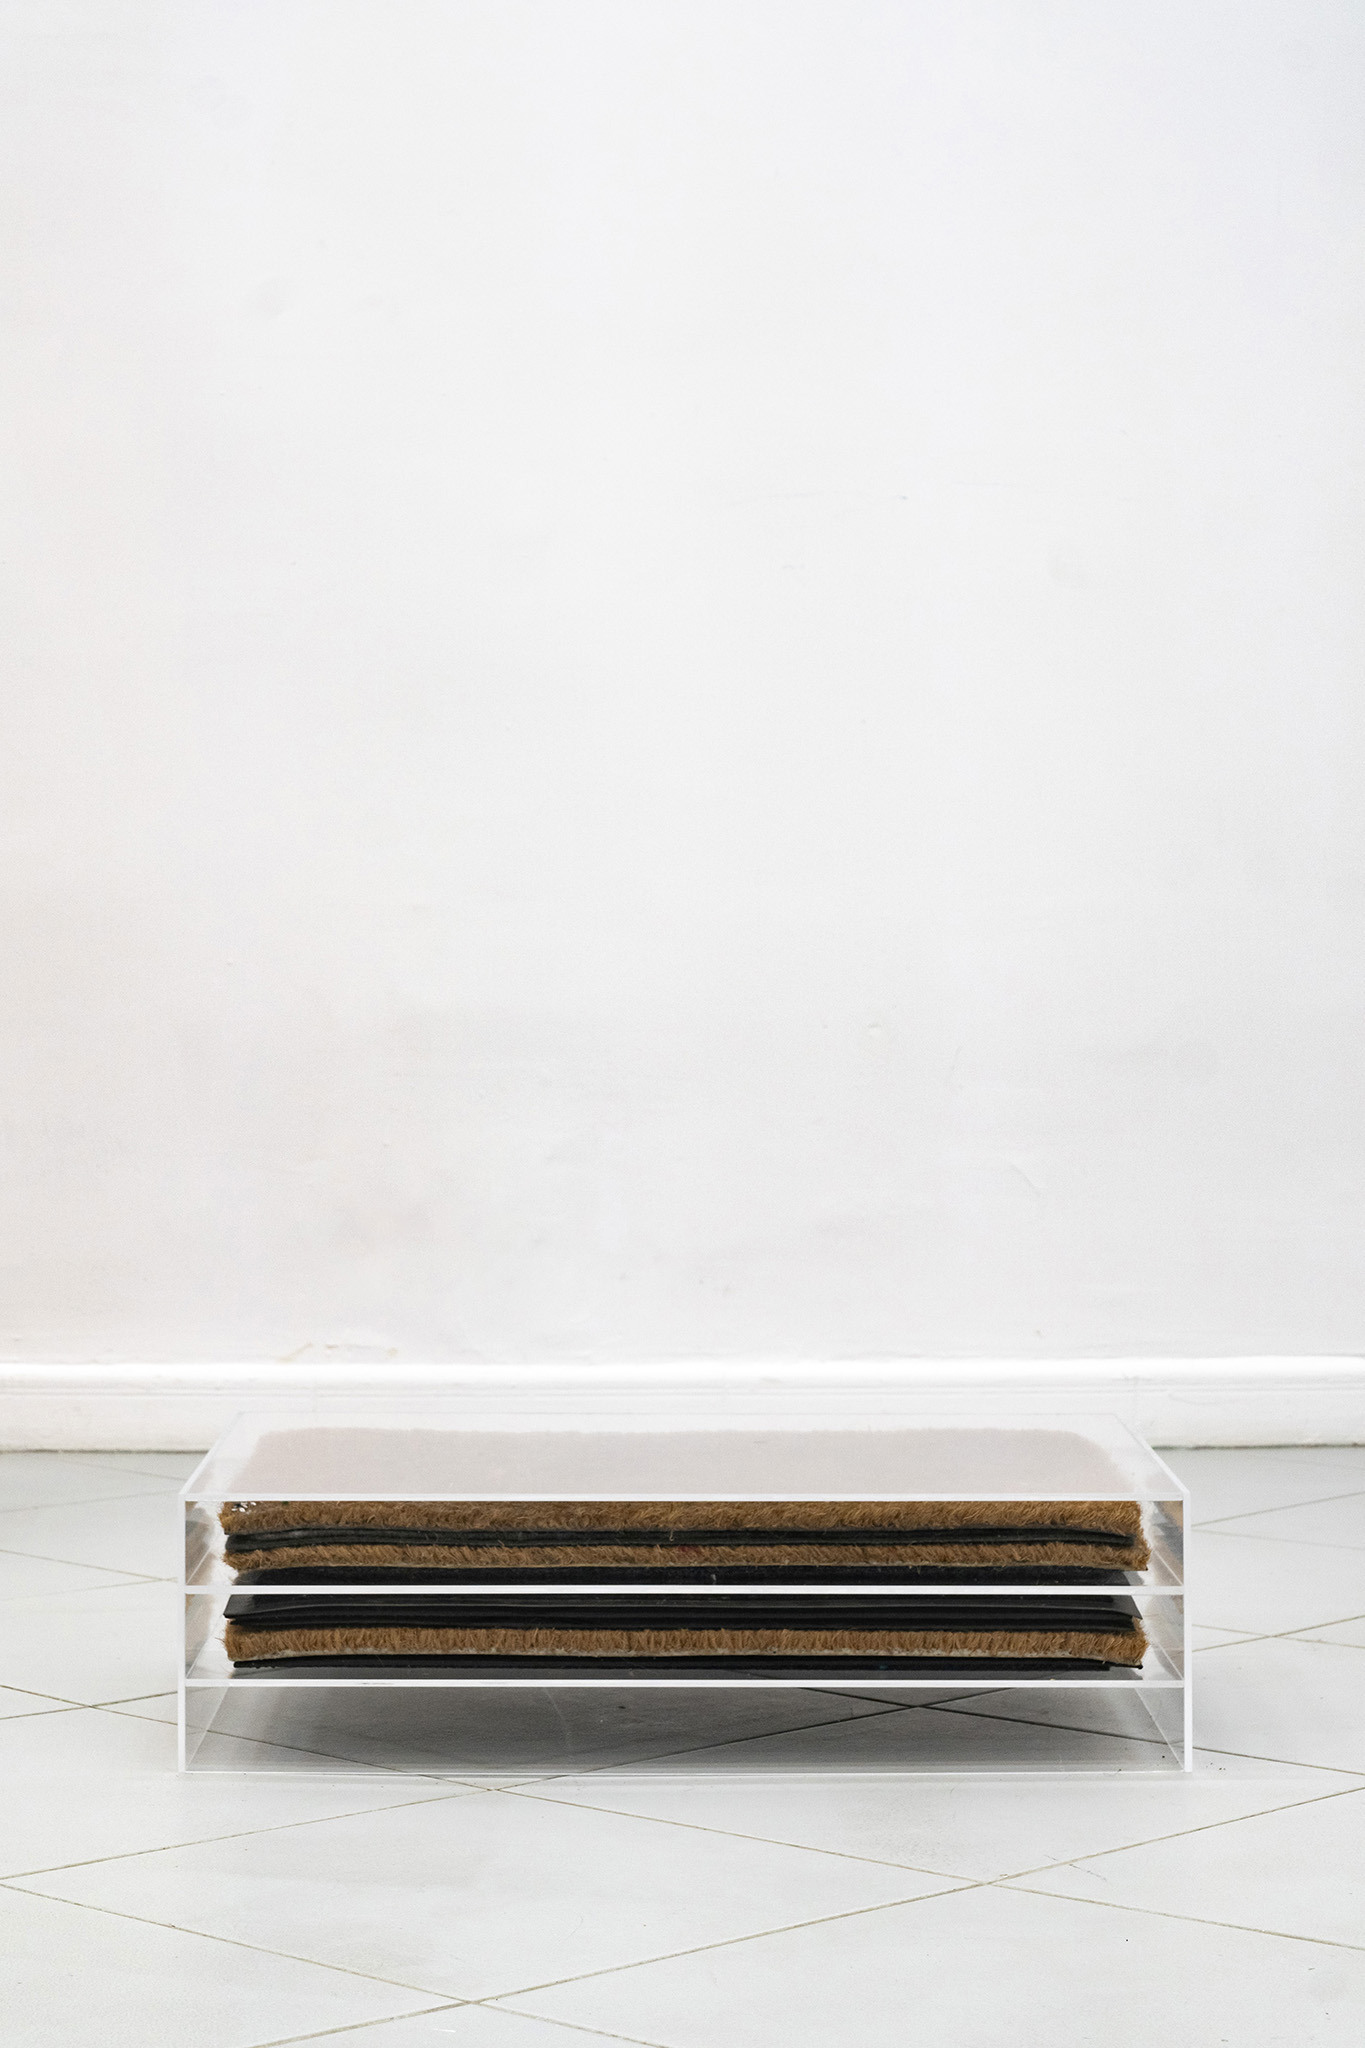 Jan Domicz, Neighbors’ doormats collected via exchange, 2024, plexiglass, doormats, 70 x 18 x 50 cm